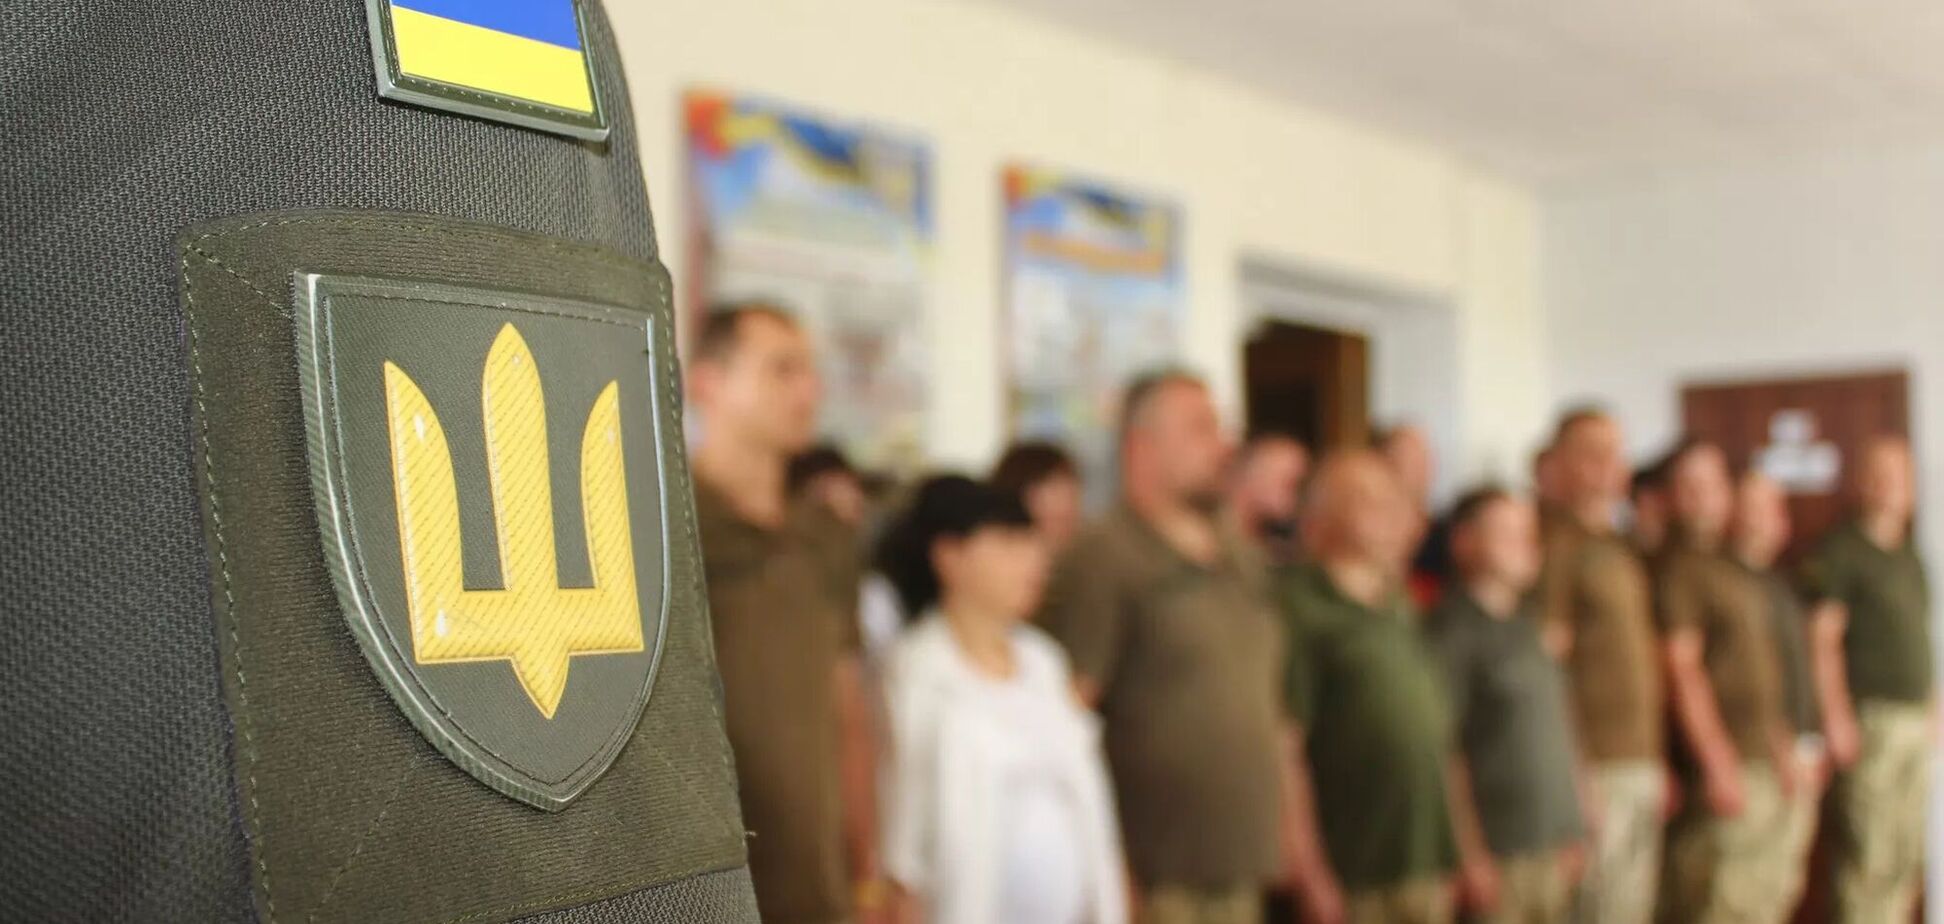 После обновления данных в е-кабинете украинцам все равно придется идти в ТЦК: нардеп дал разъяснение